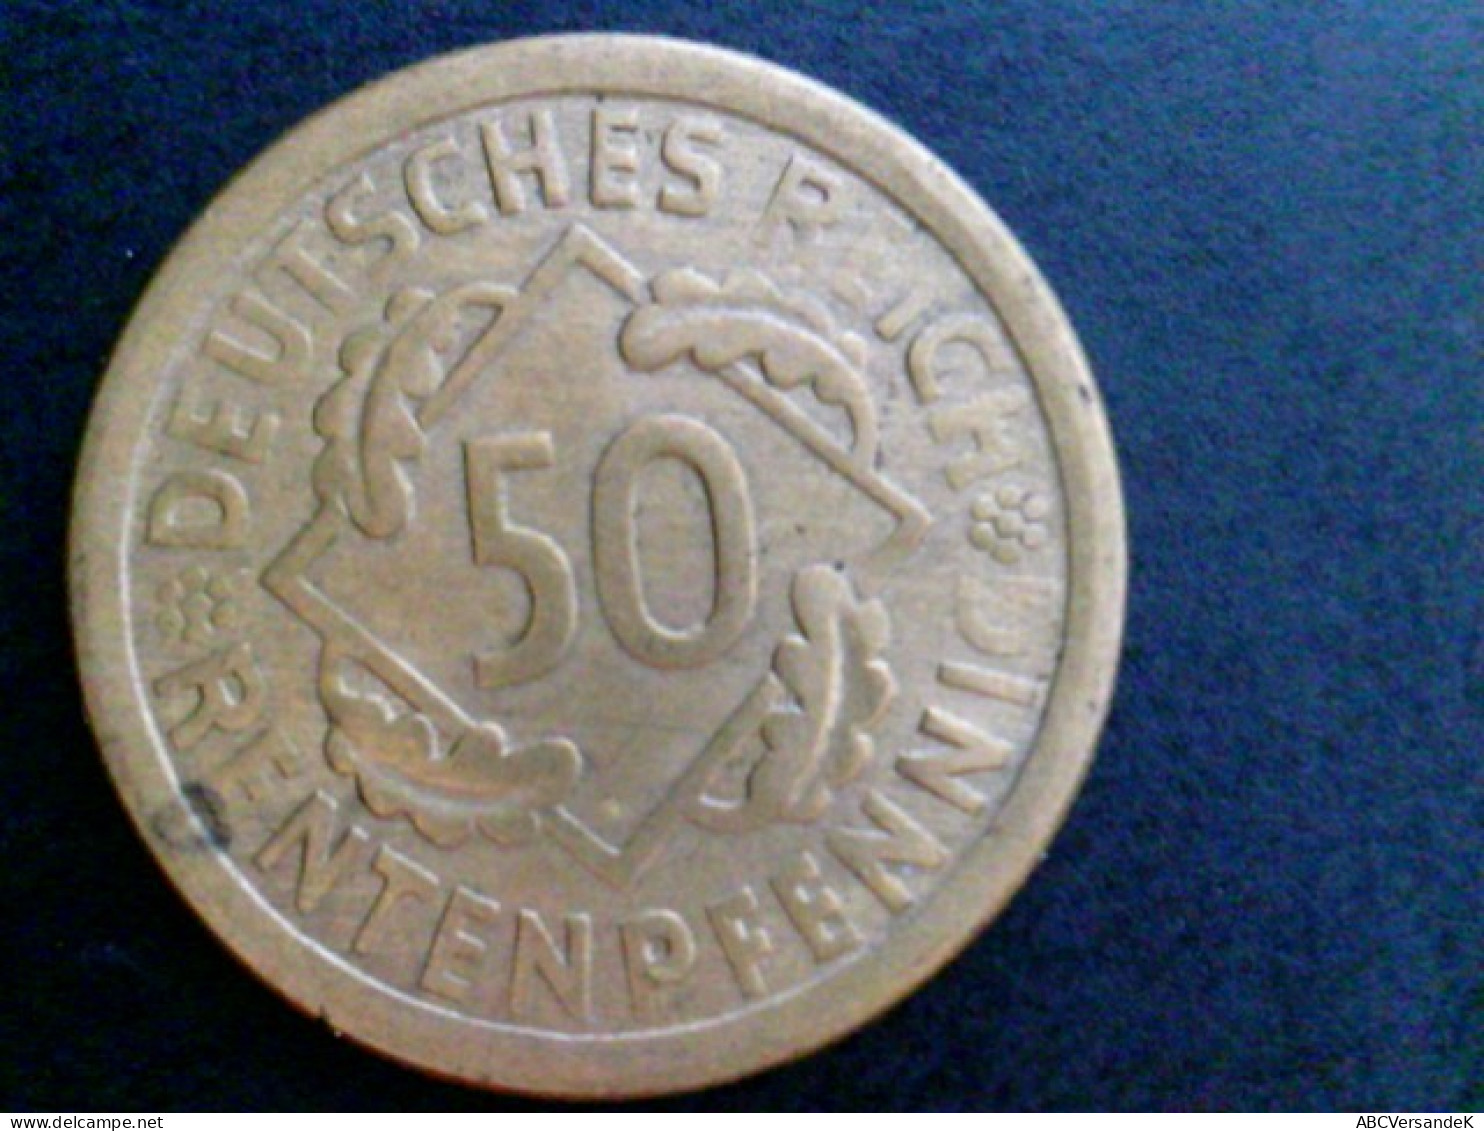 Münzen/ Medaillen: 1 Münze, 1924 E Deutsches Reich, 50 Rentenpfennig, Sehr Selten - Numismatics